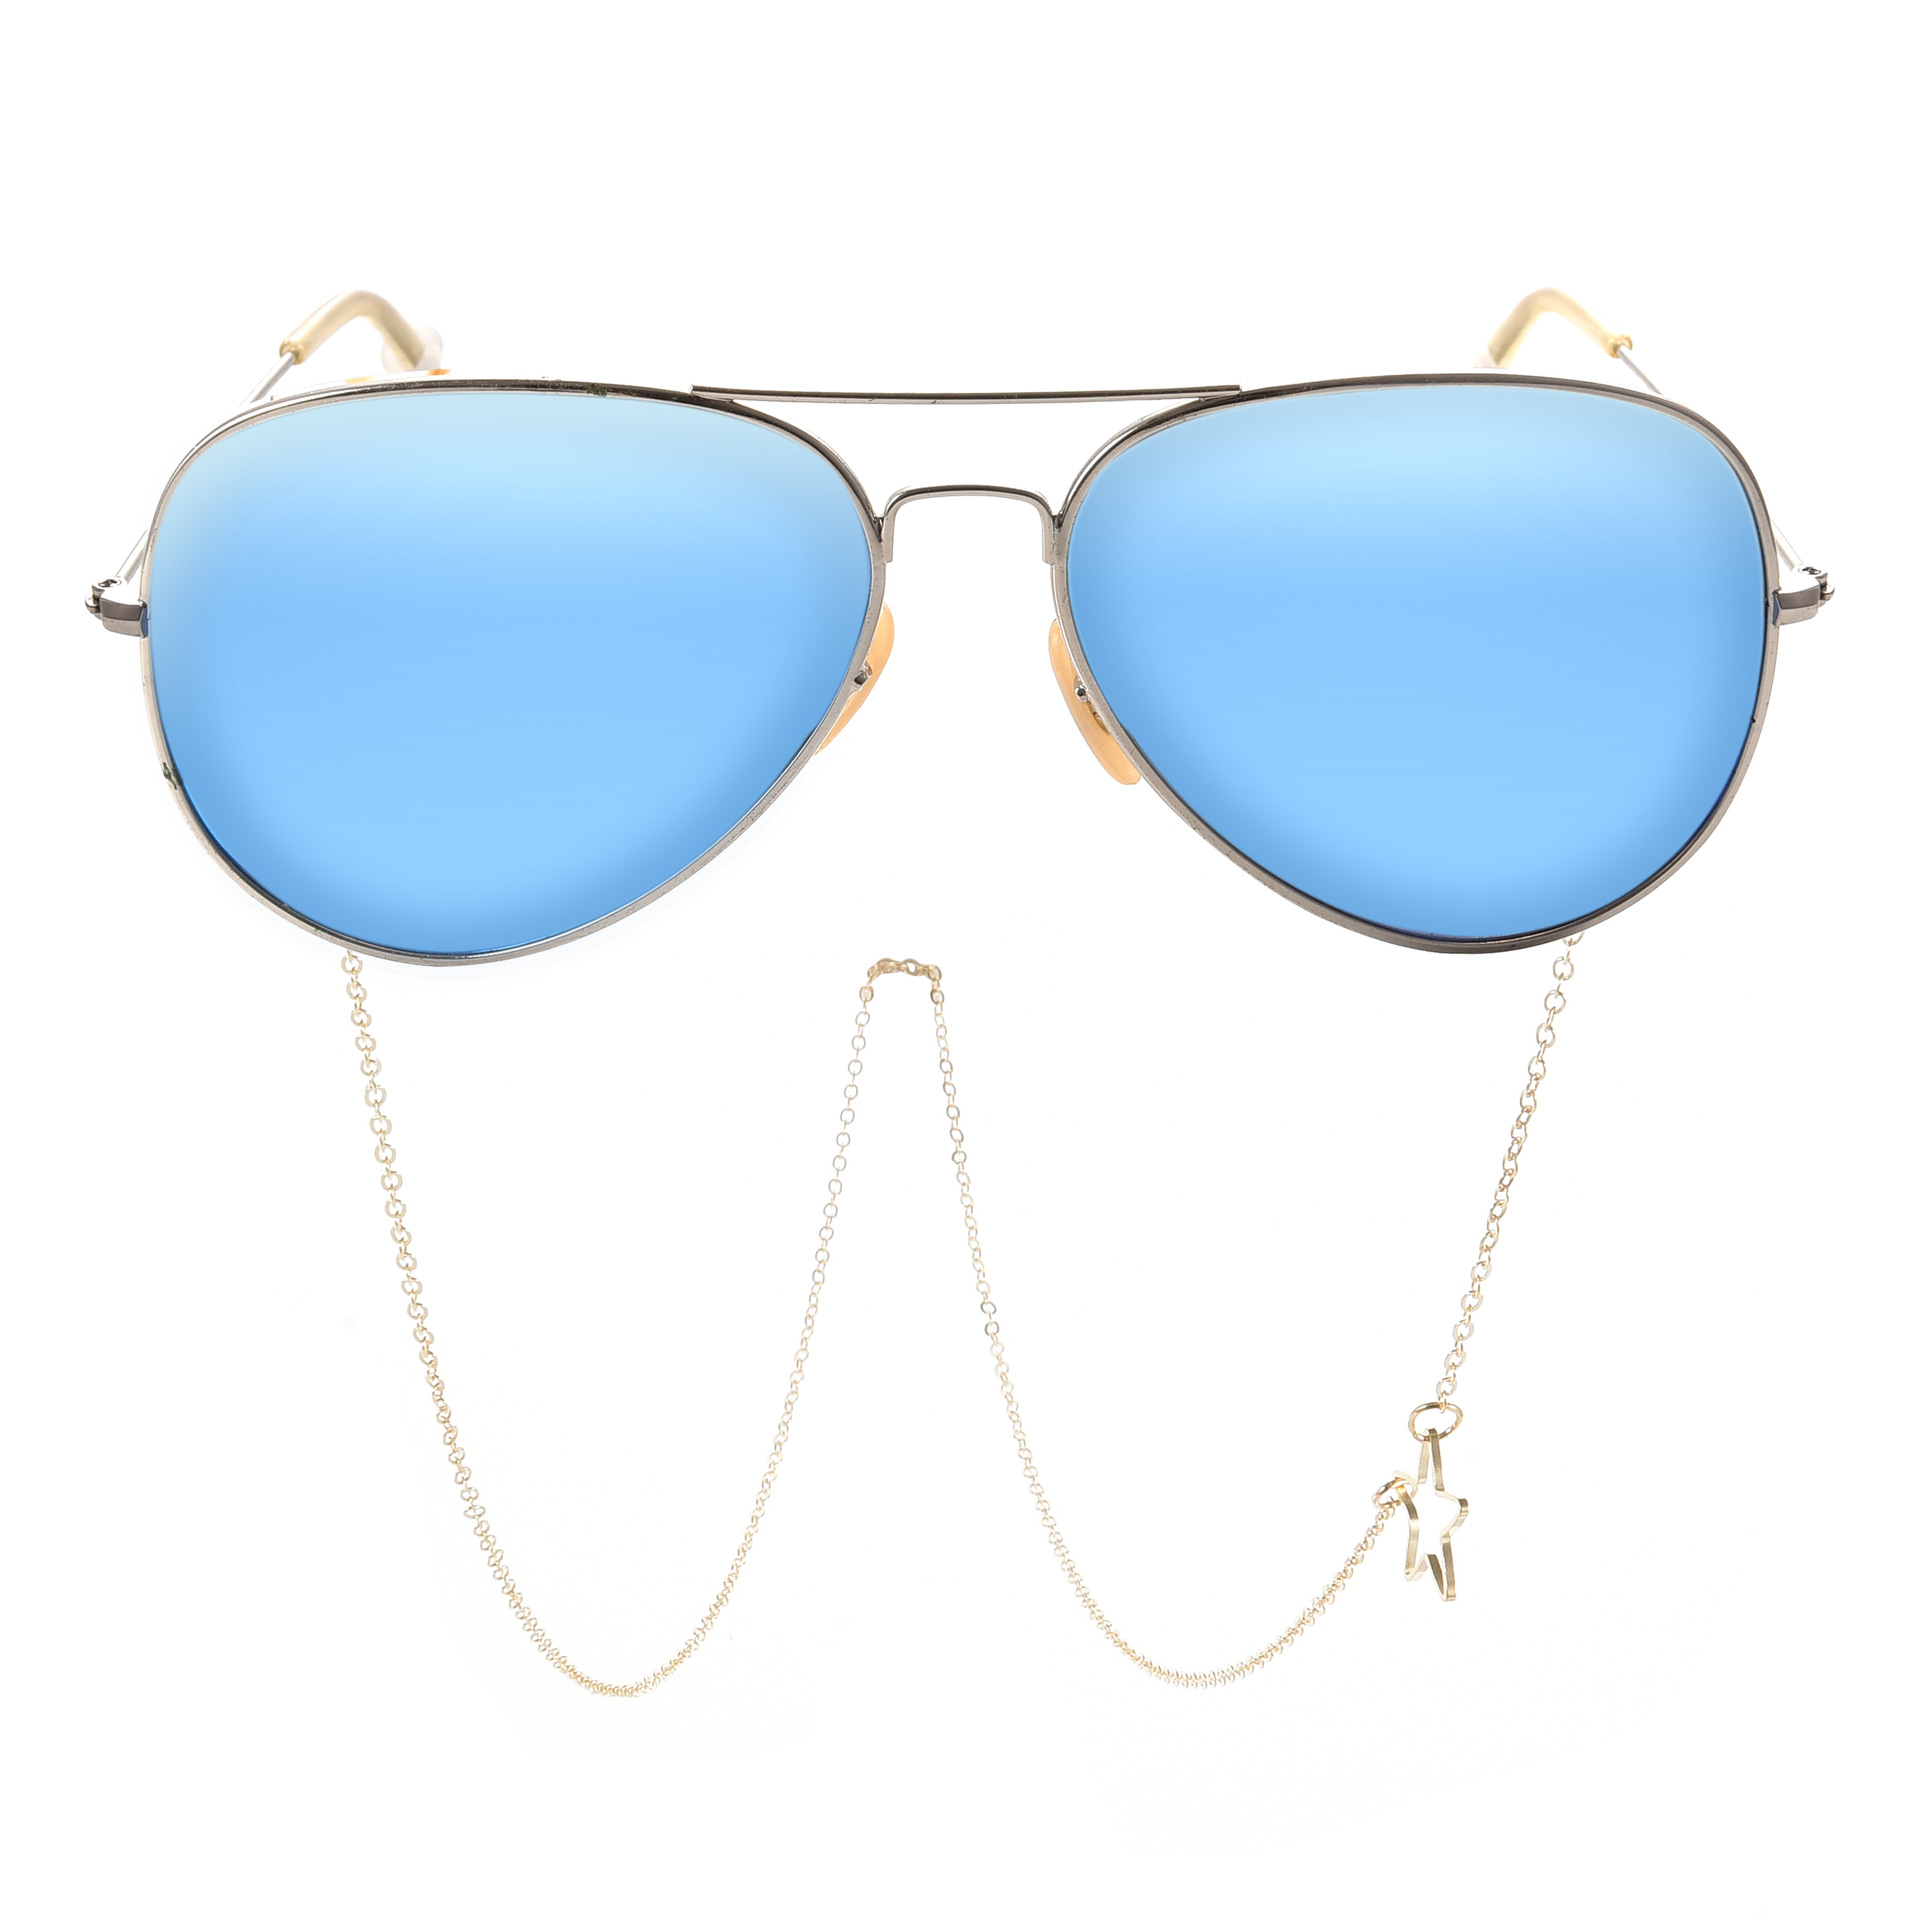 Lunettes porte-chaîne pour femmes creux pentagramme lanière lunettes sangle lunettes de soleil cordons décontracté lunettes accessoires DJ-157